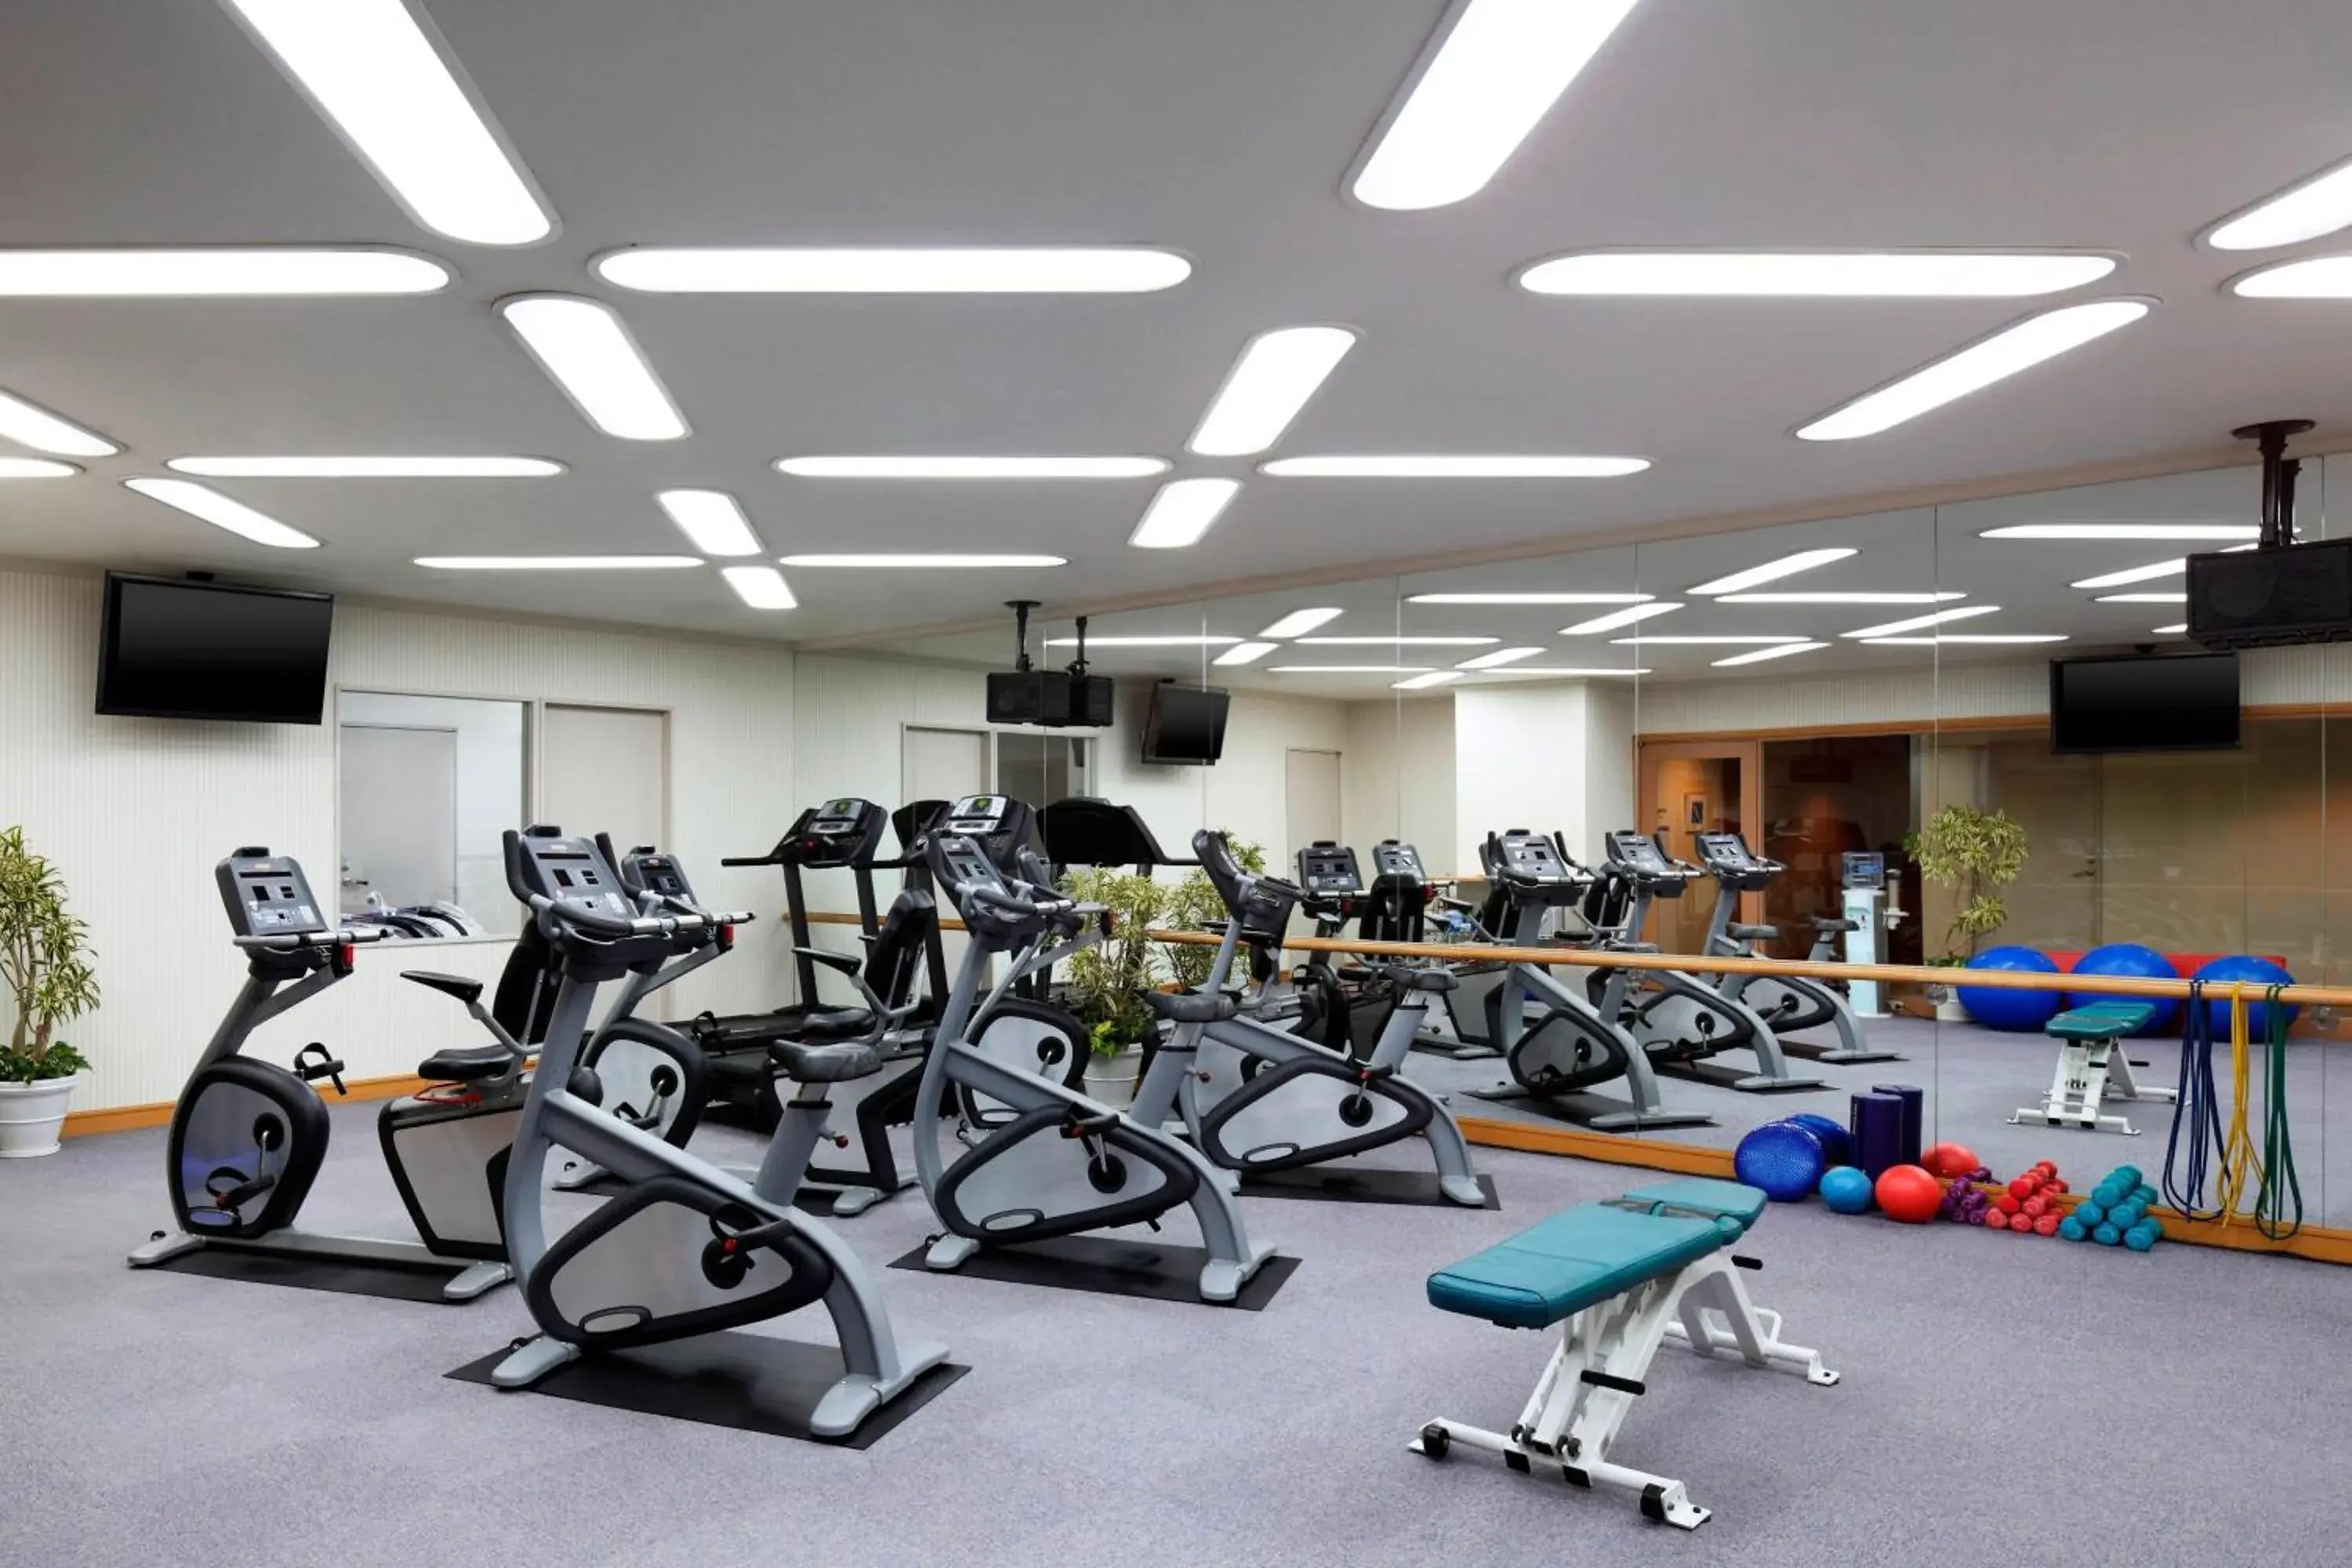 Fitness centre/facilities, Fitness Center/Facilities in Yokohama Bay Sheraton Hotel and Towers